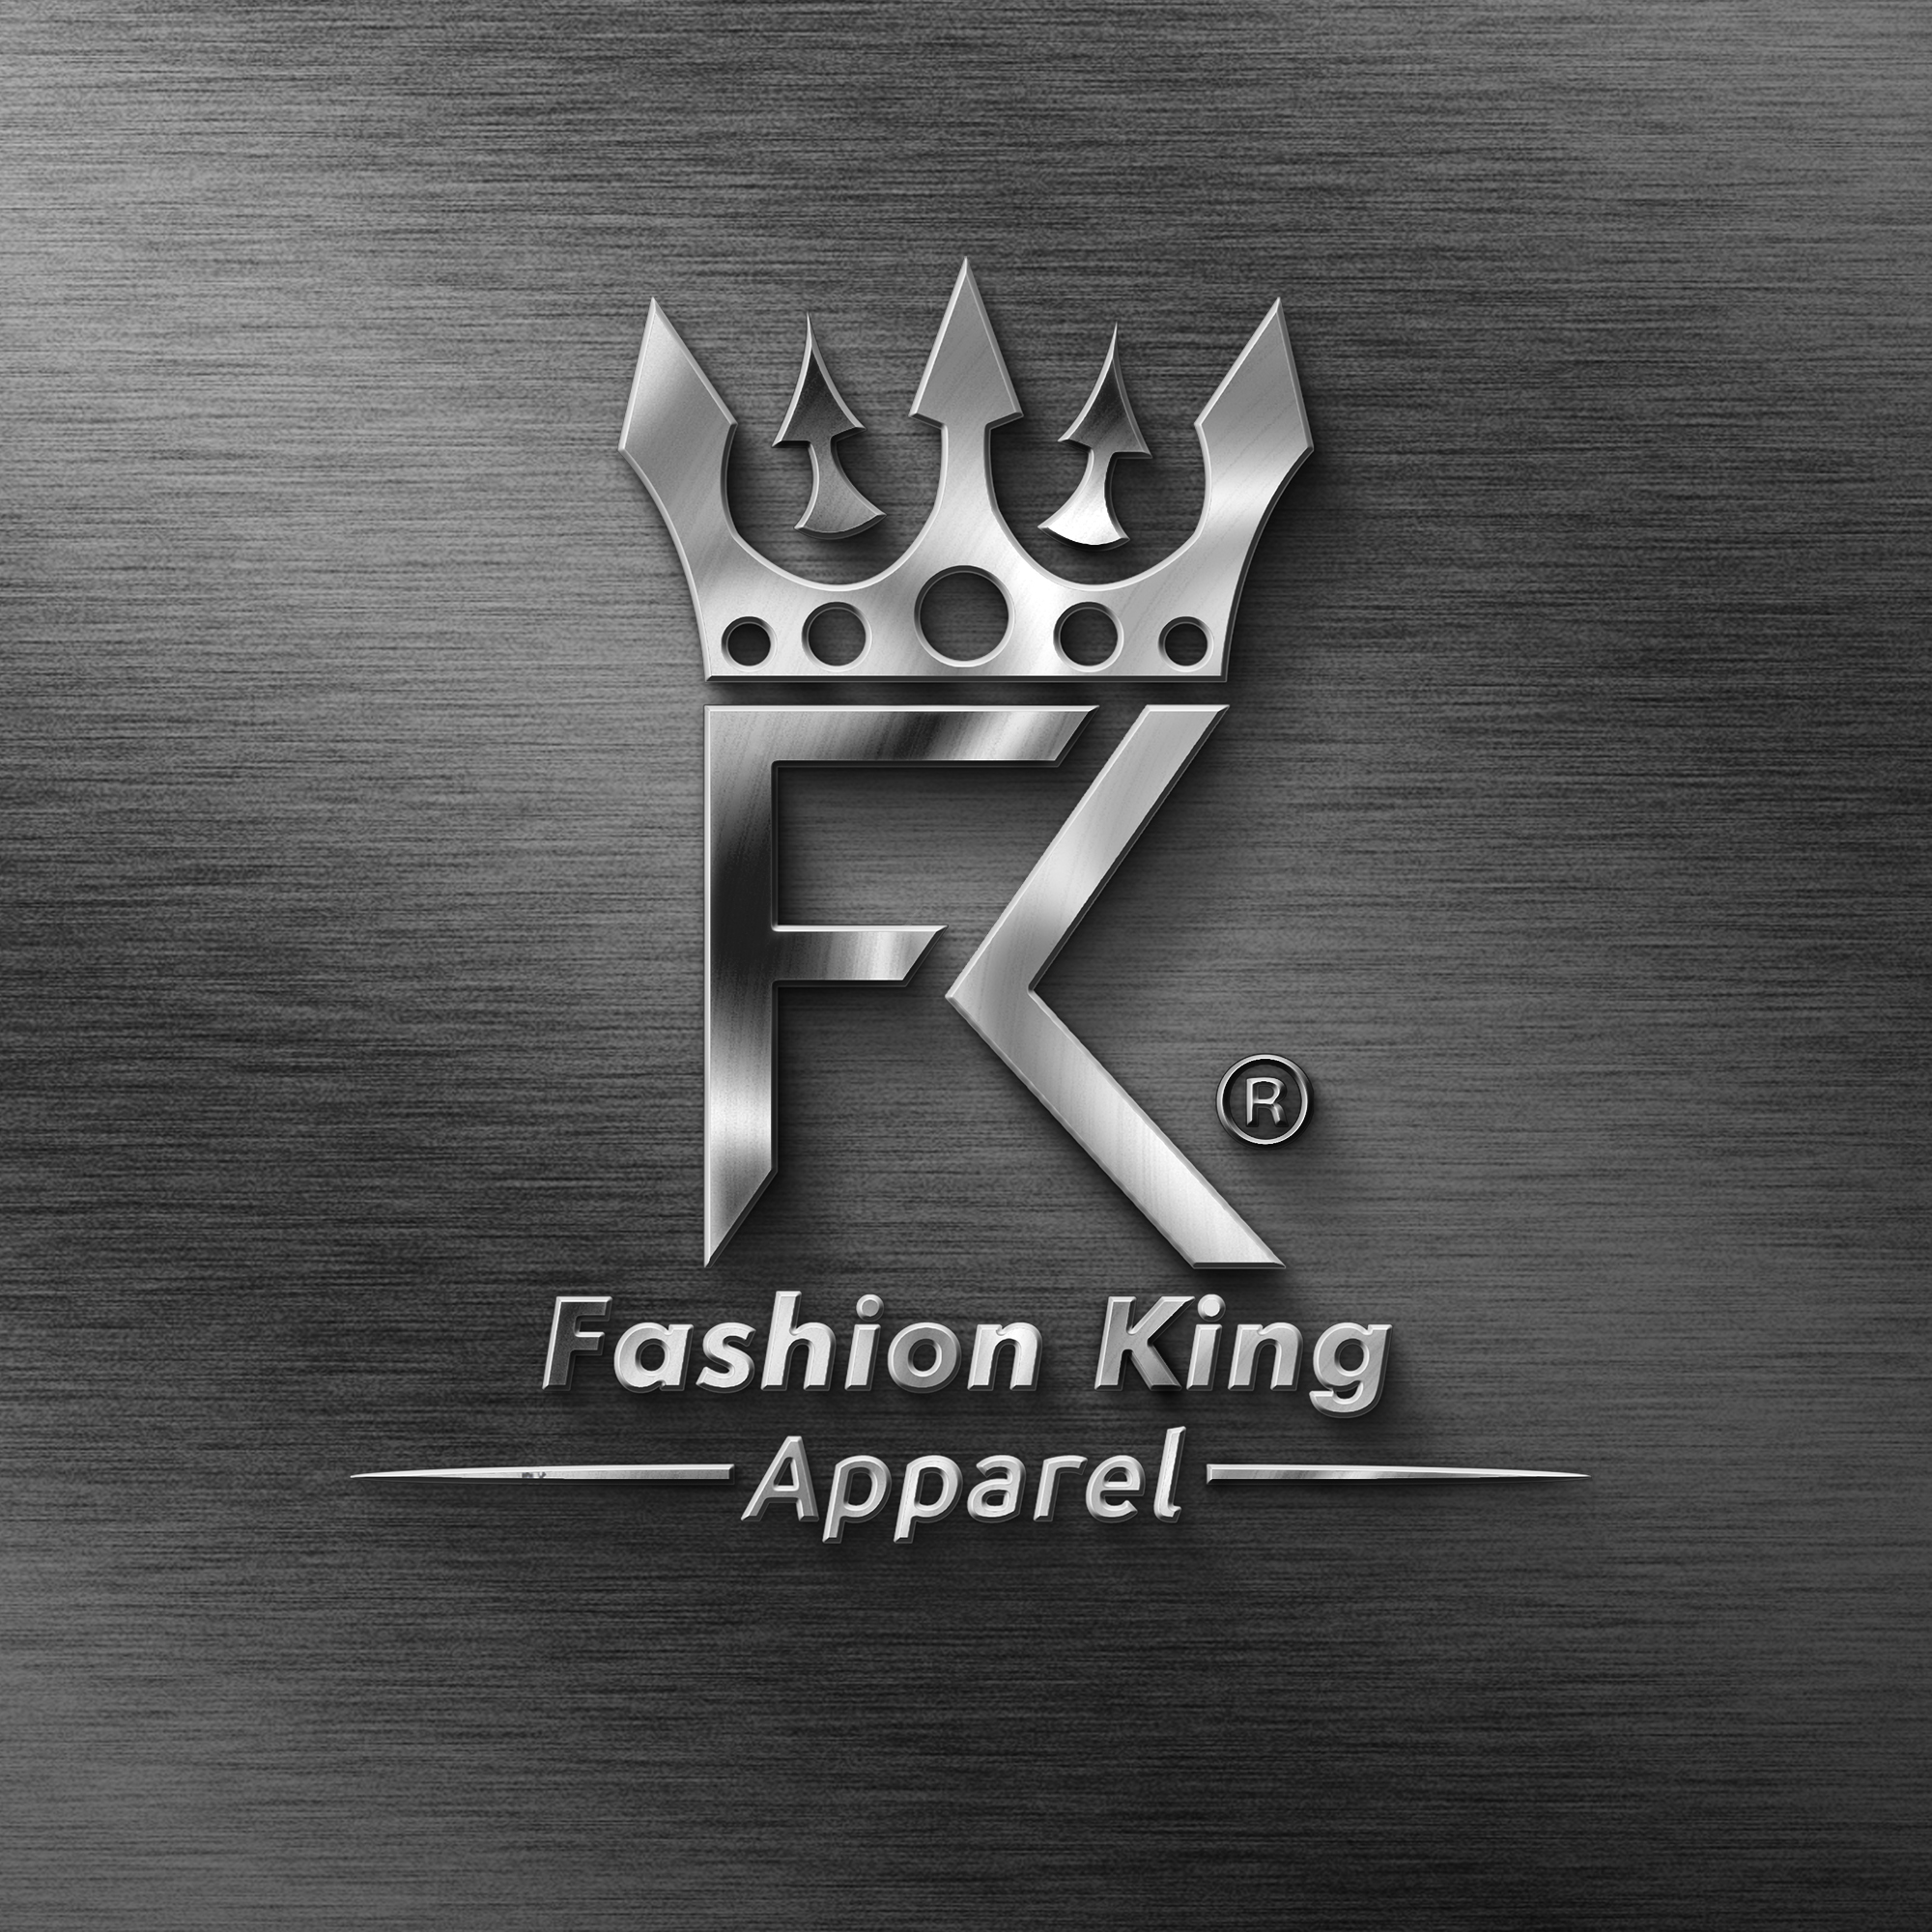 Fashion King Apparel